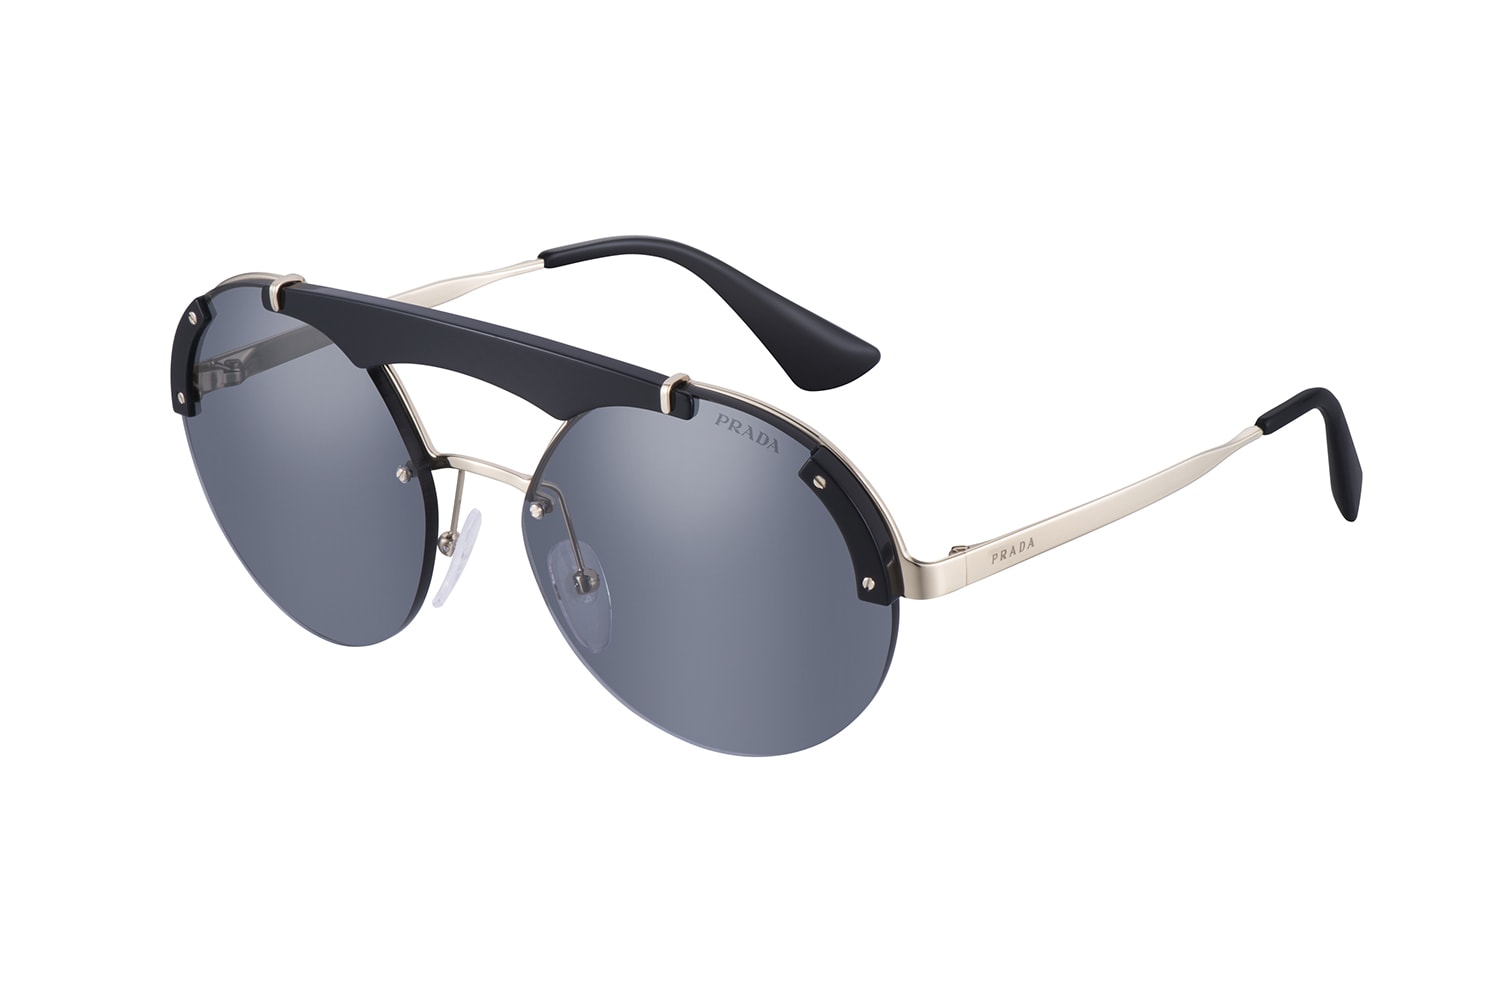 룩소티카 프라다 2017 가을 겨울 남성 선글라스 아이웨어 컬렉션 luxottica prada fall winter mens sunglasses eyewear collection